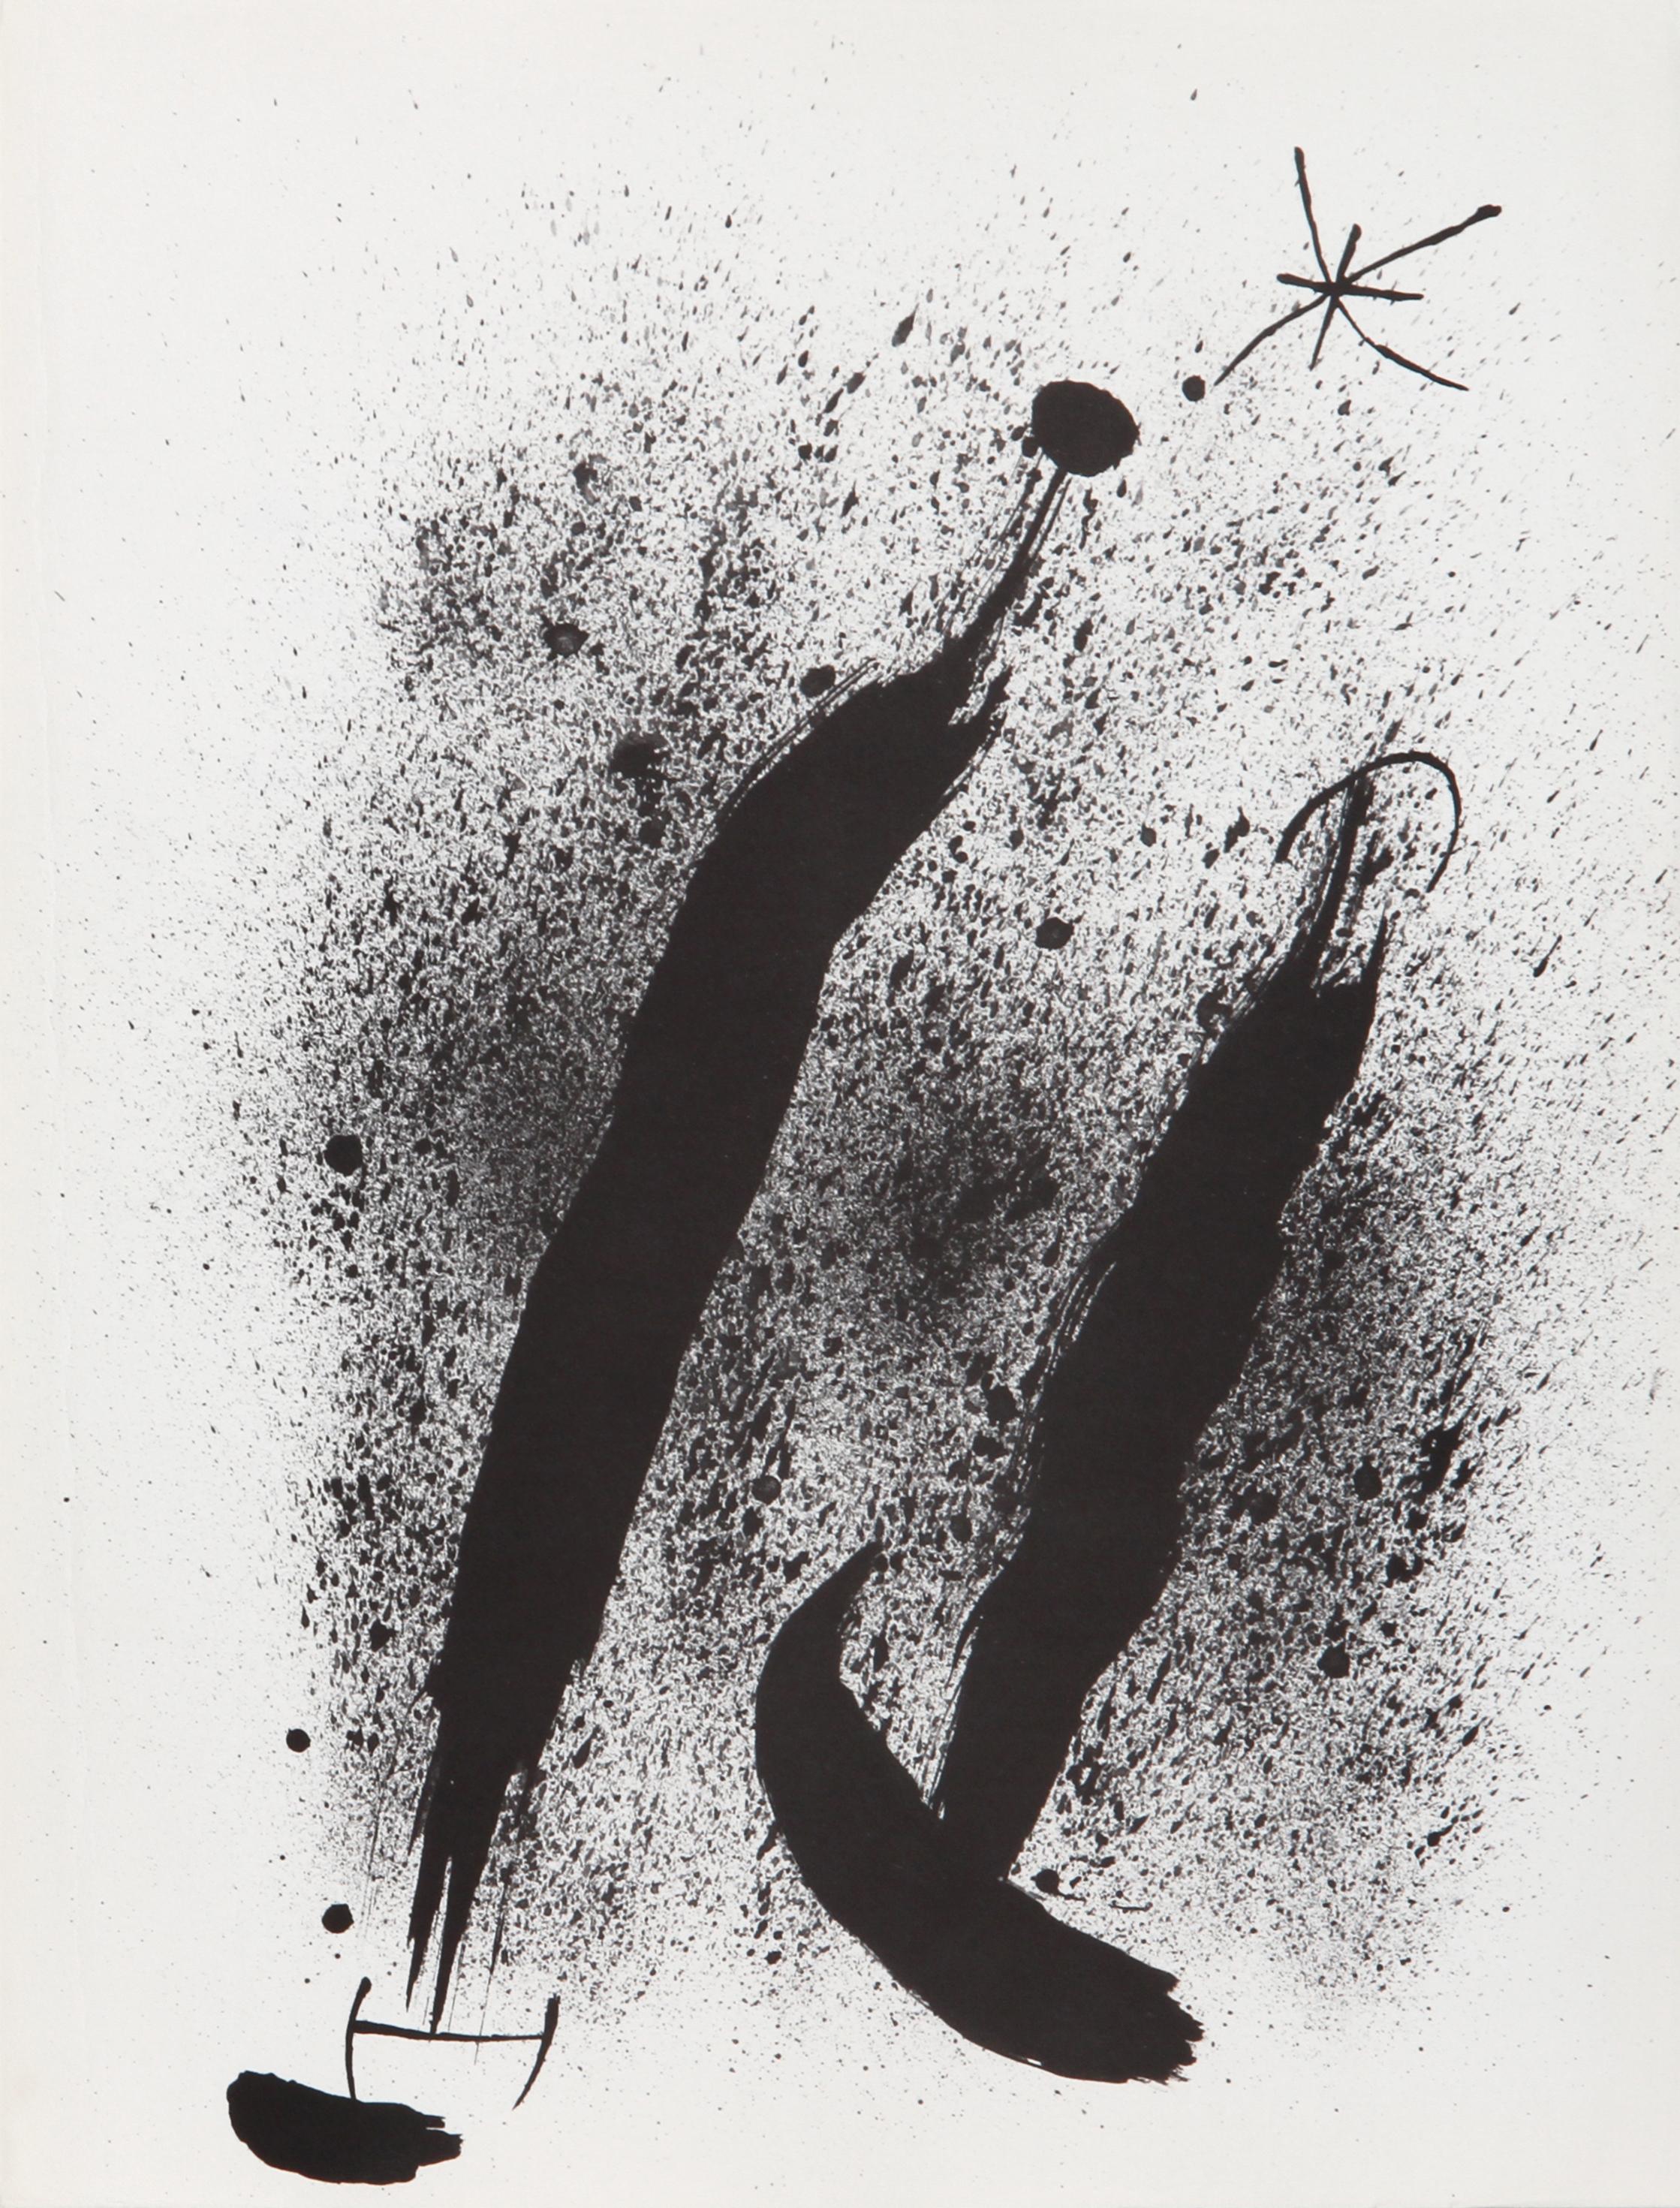 Les Essencies de la Tierra, Lithograph by Joan Miró 1968 1